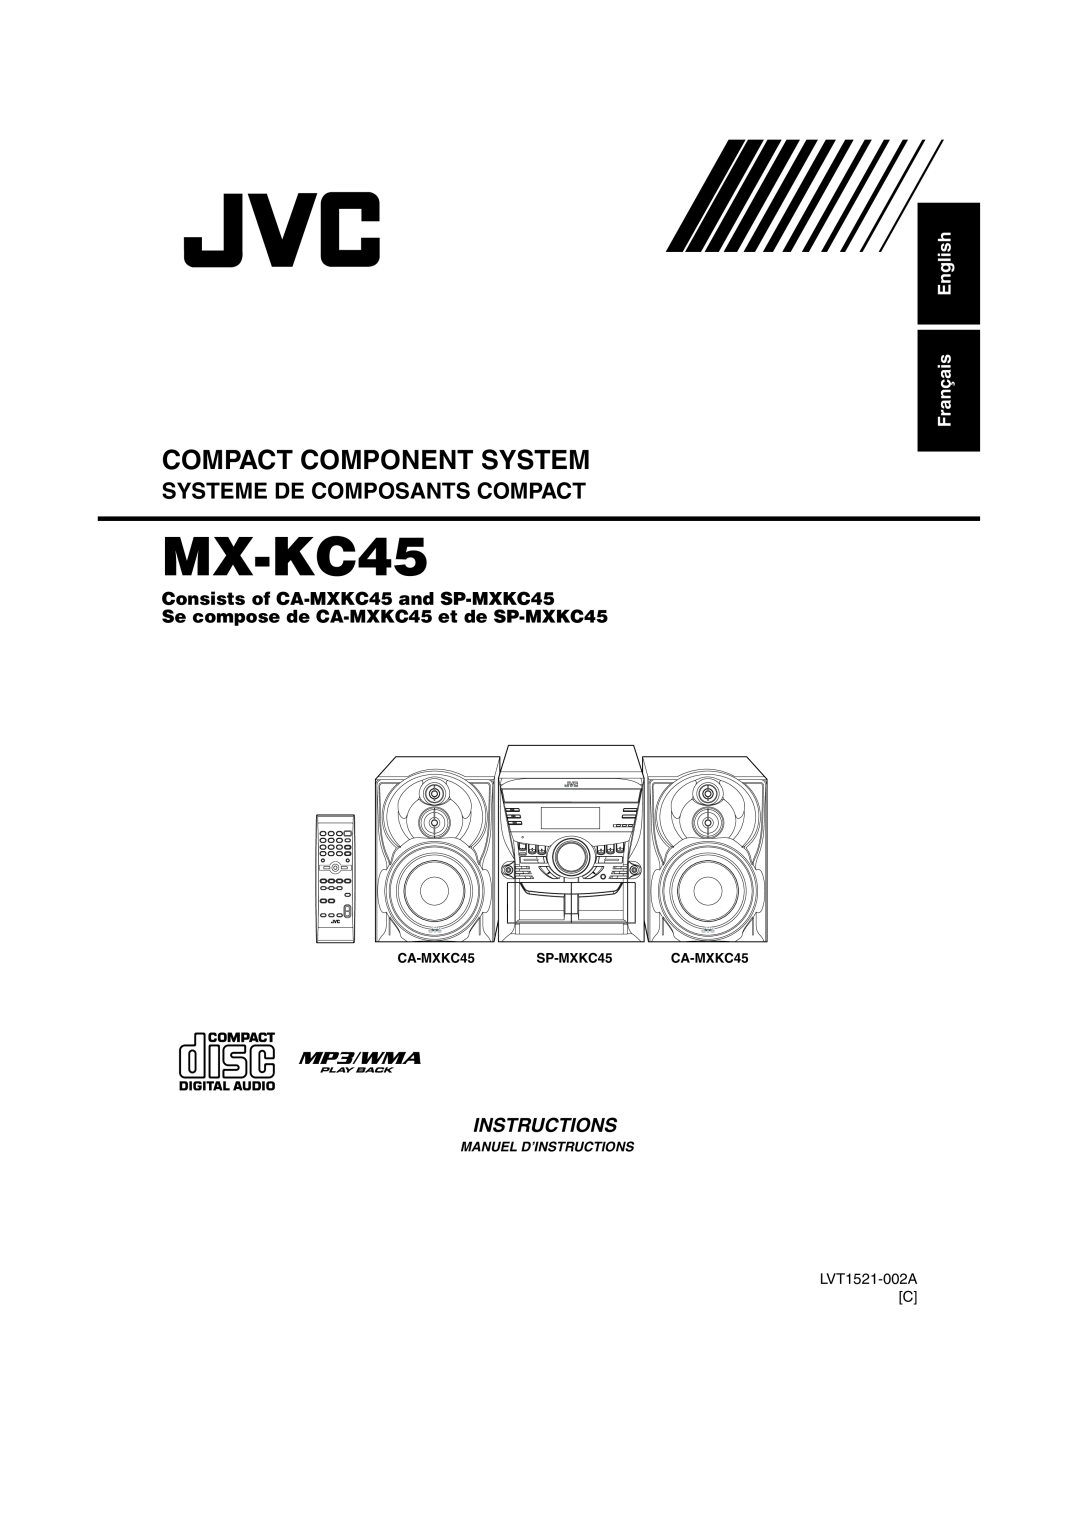 JVC MX-KC45 manual Français English, Se compose de CA-MXKC45et de SP-MXKC45, Compact Component System, Instructions 